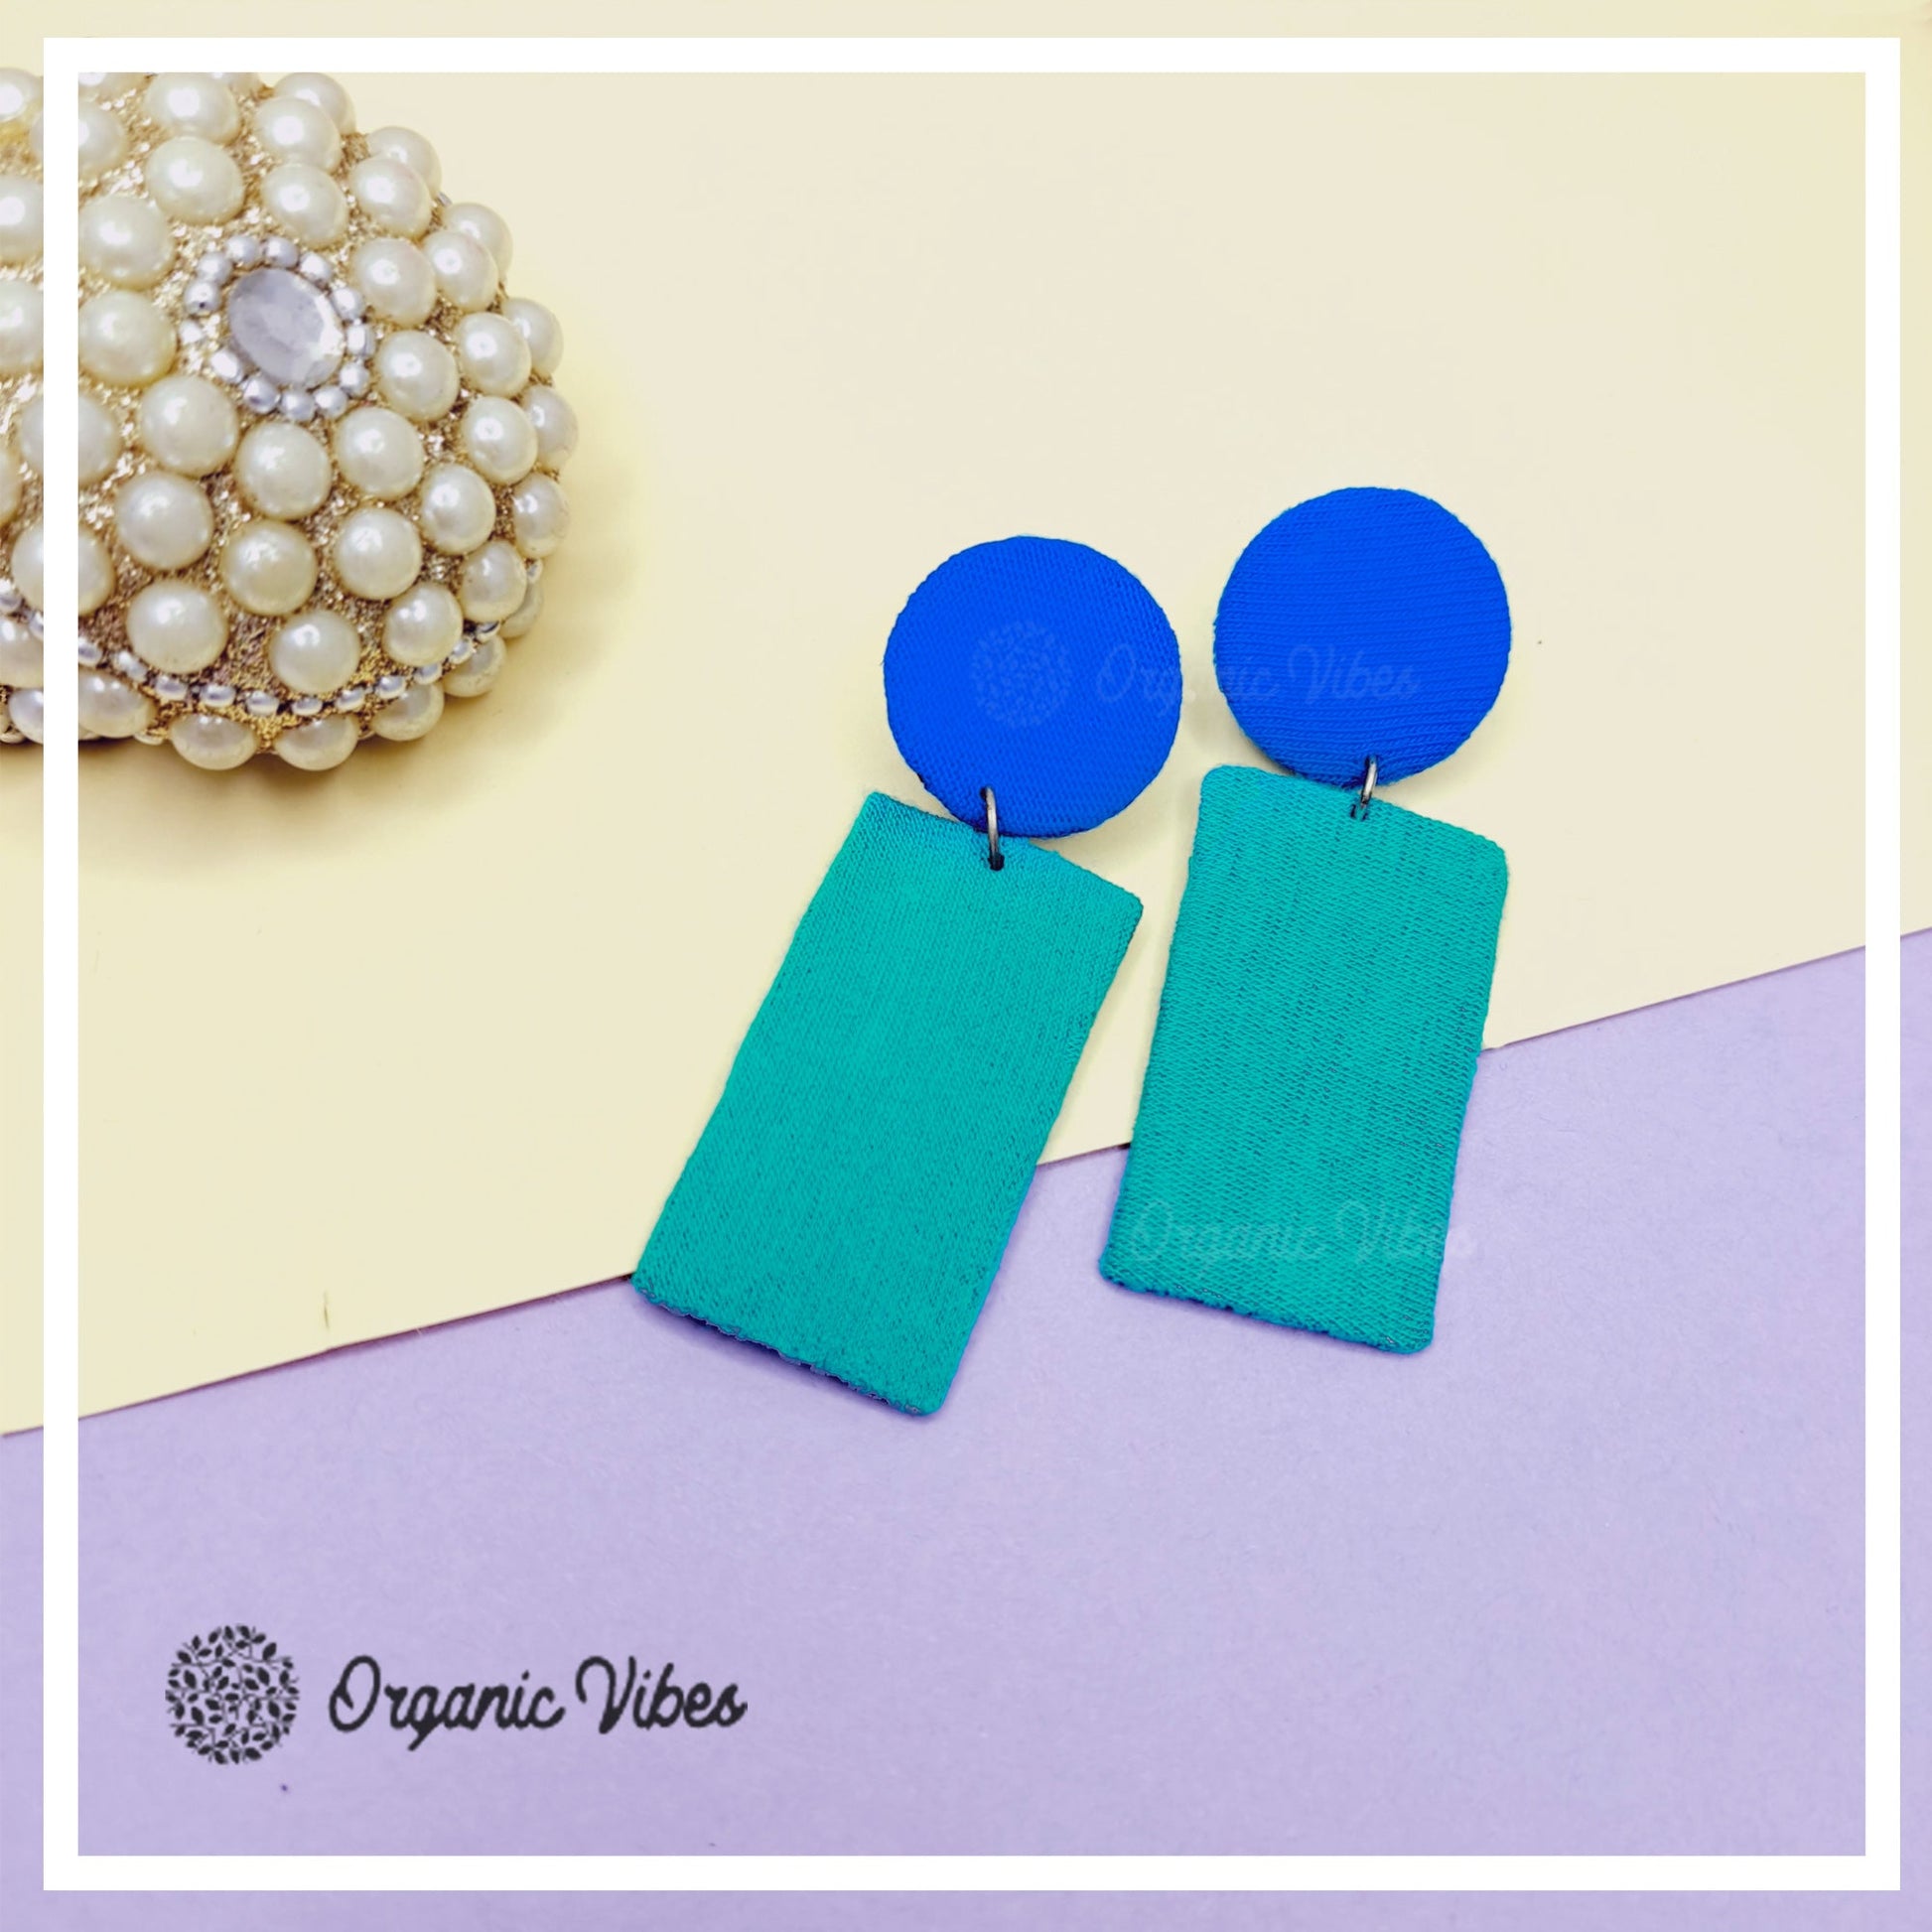 Organic Vibes Handmade Geometrical Shape Dangler Fabric Earrings For Women